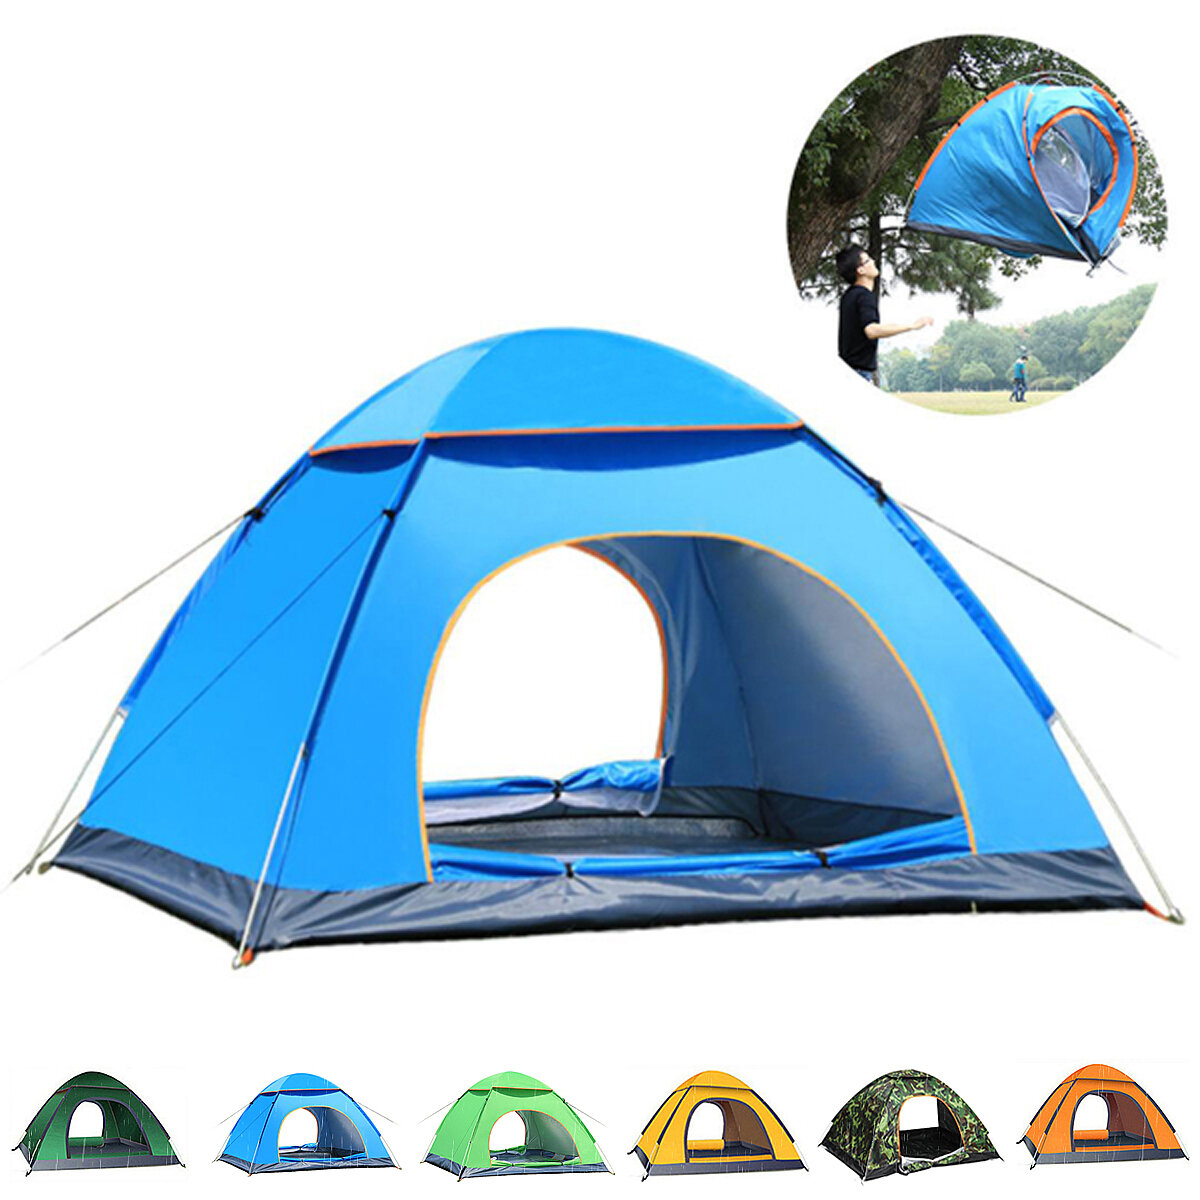 Sun camping. Палатка naturehike автоматическая, на 3 человека, синяя. Навес для кемпинга. Палатка стекловолокно автоматическая. Кемпинговая палатка премиум класса.